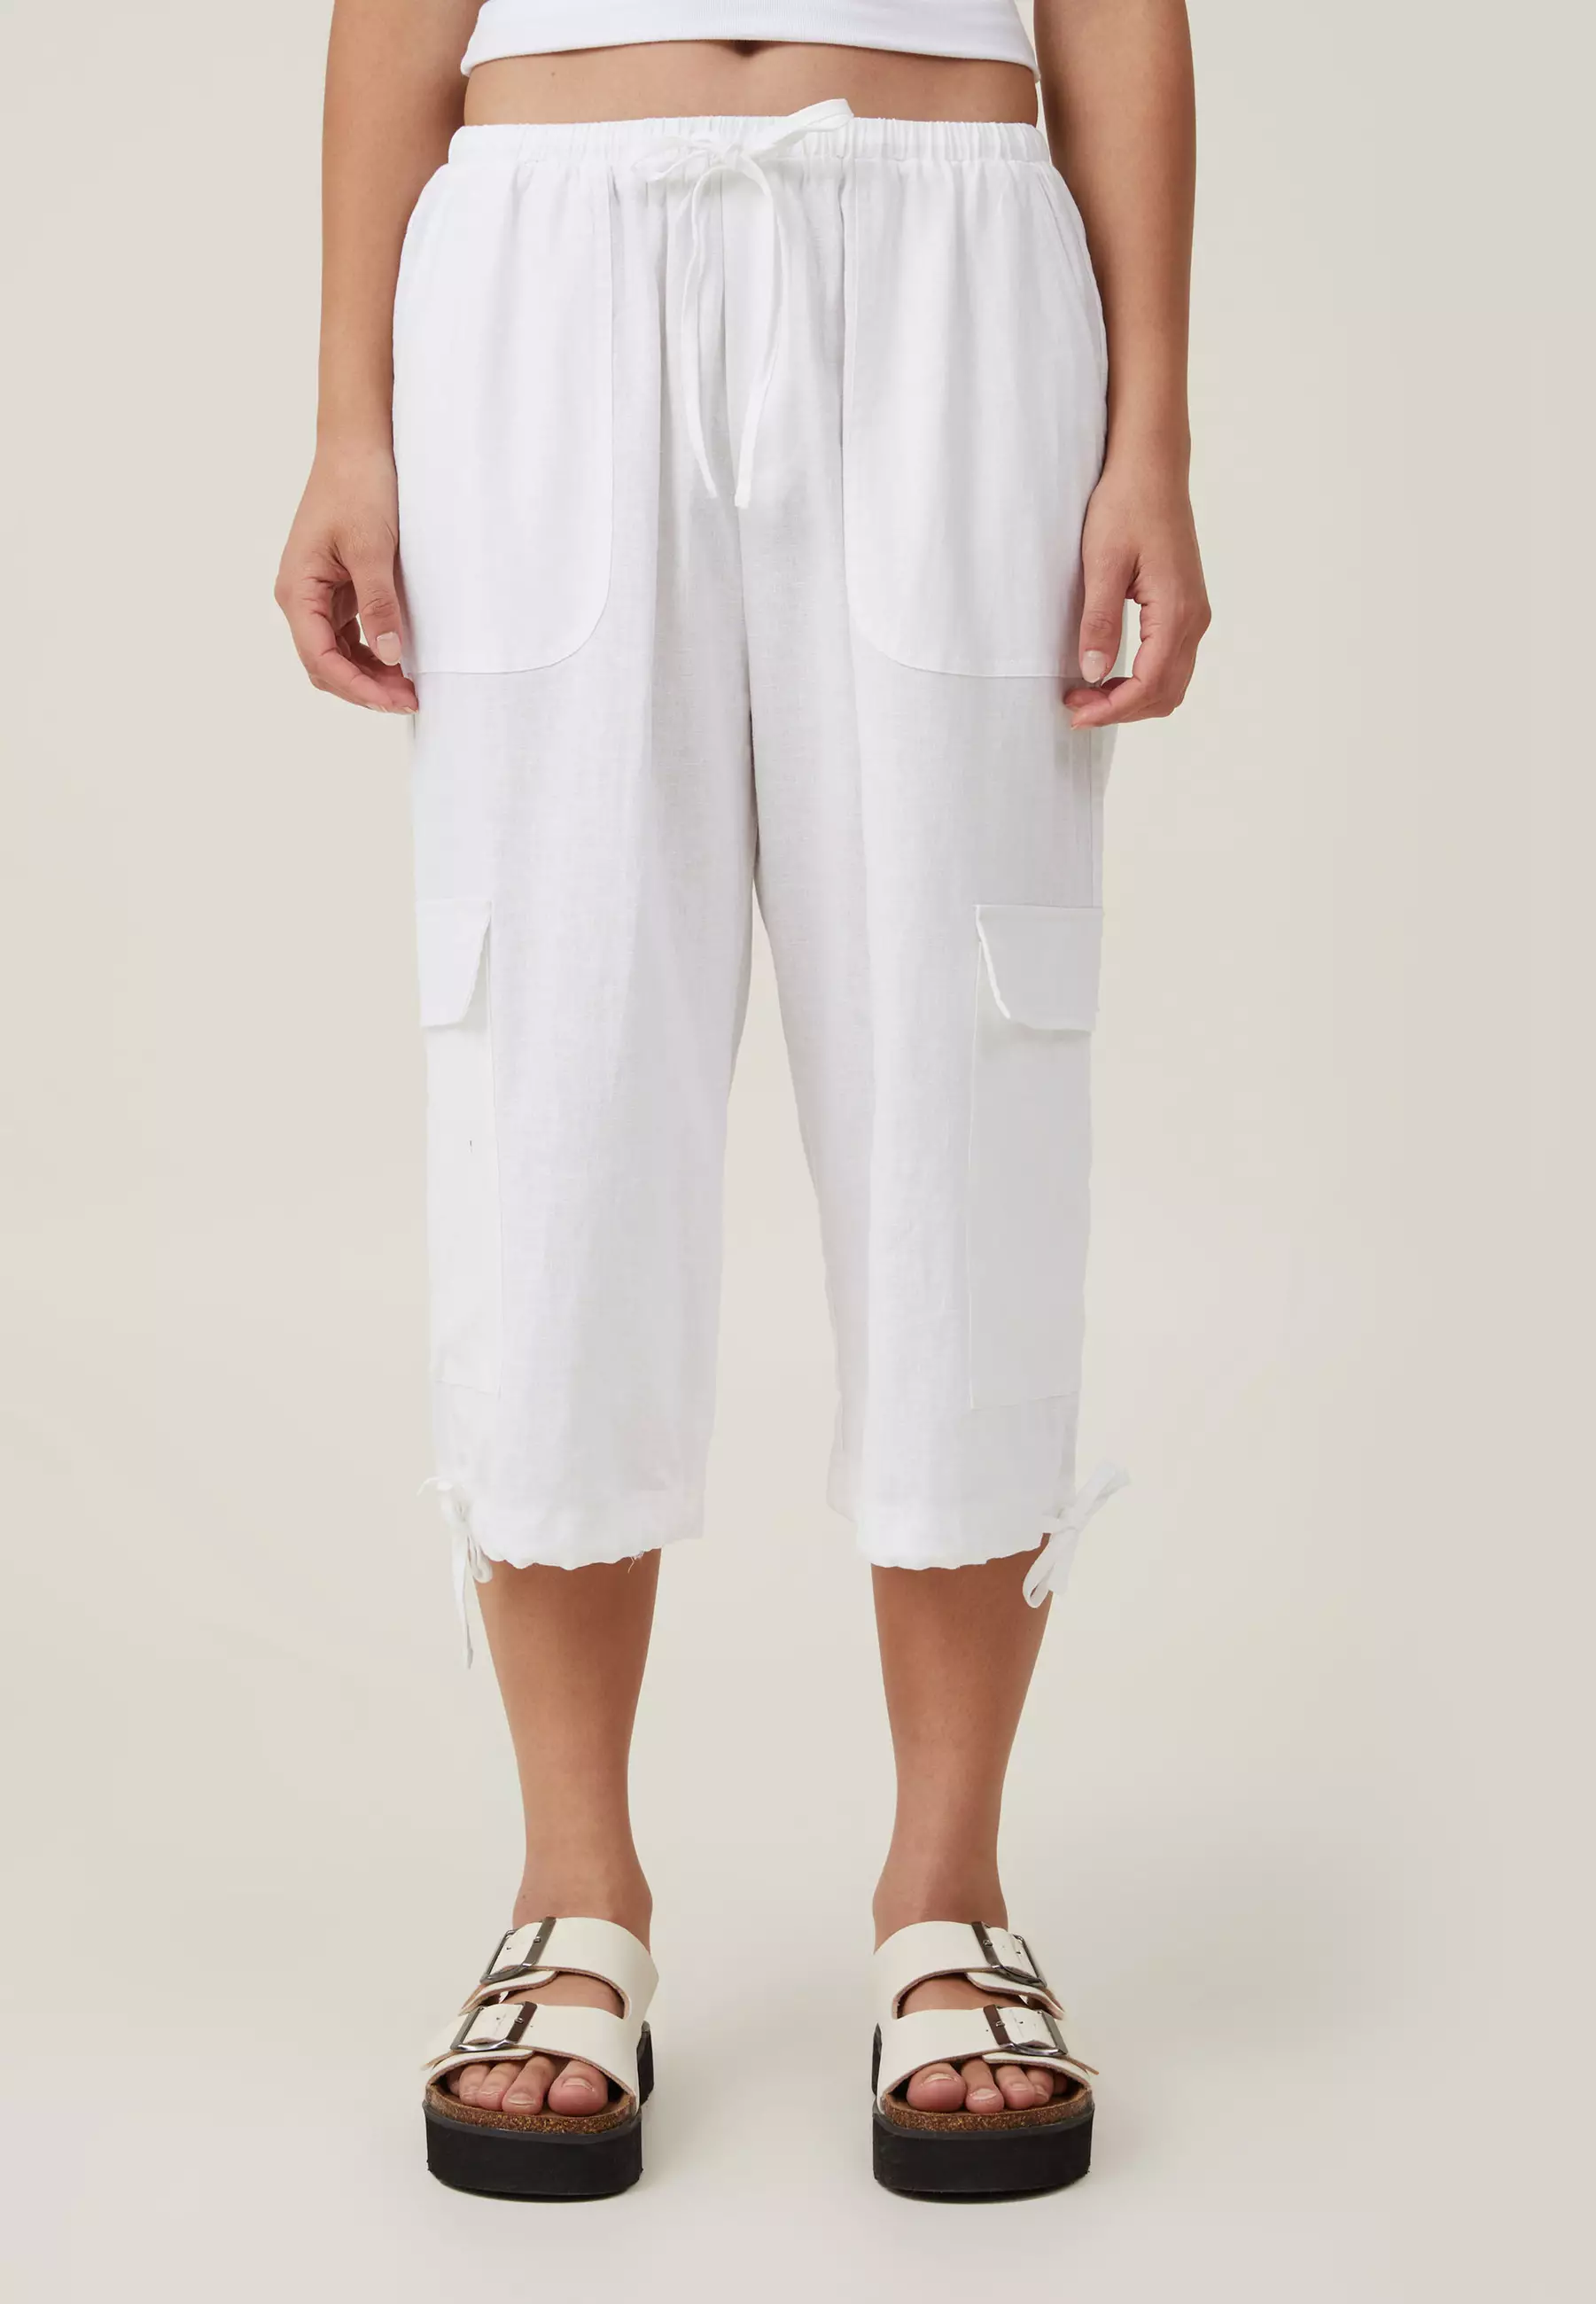 Hue Solid Capri legging in White